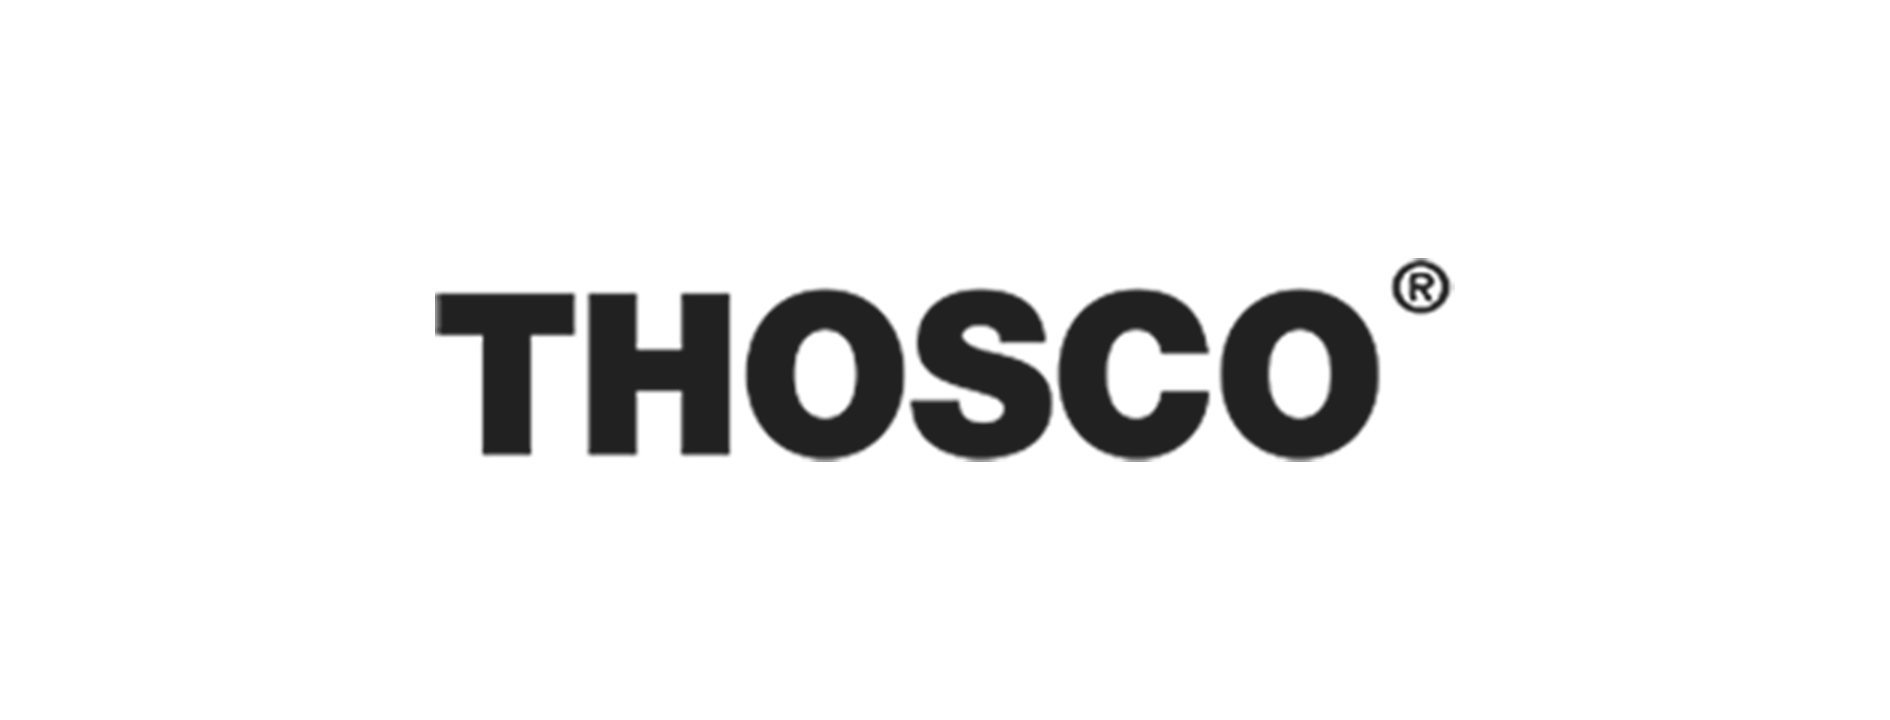 Thosco logo2 3x